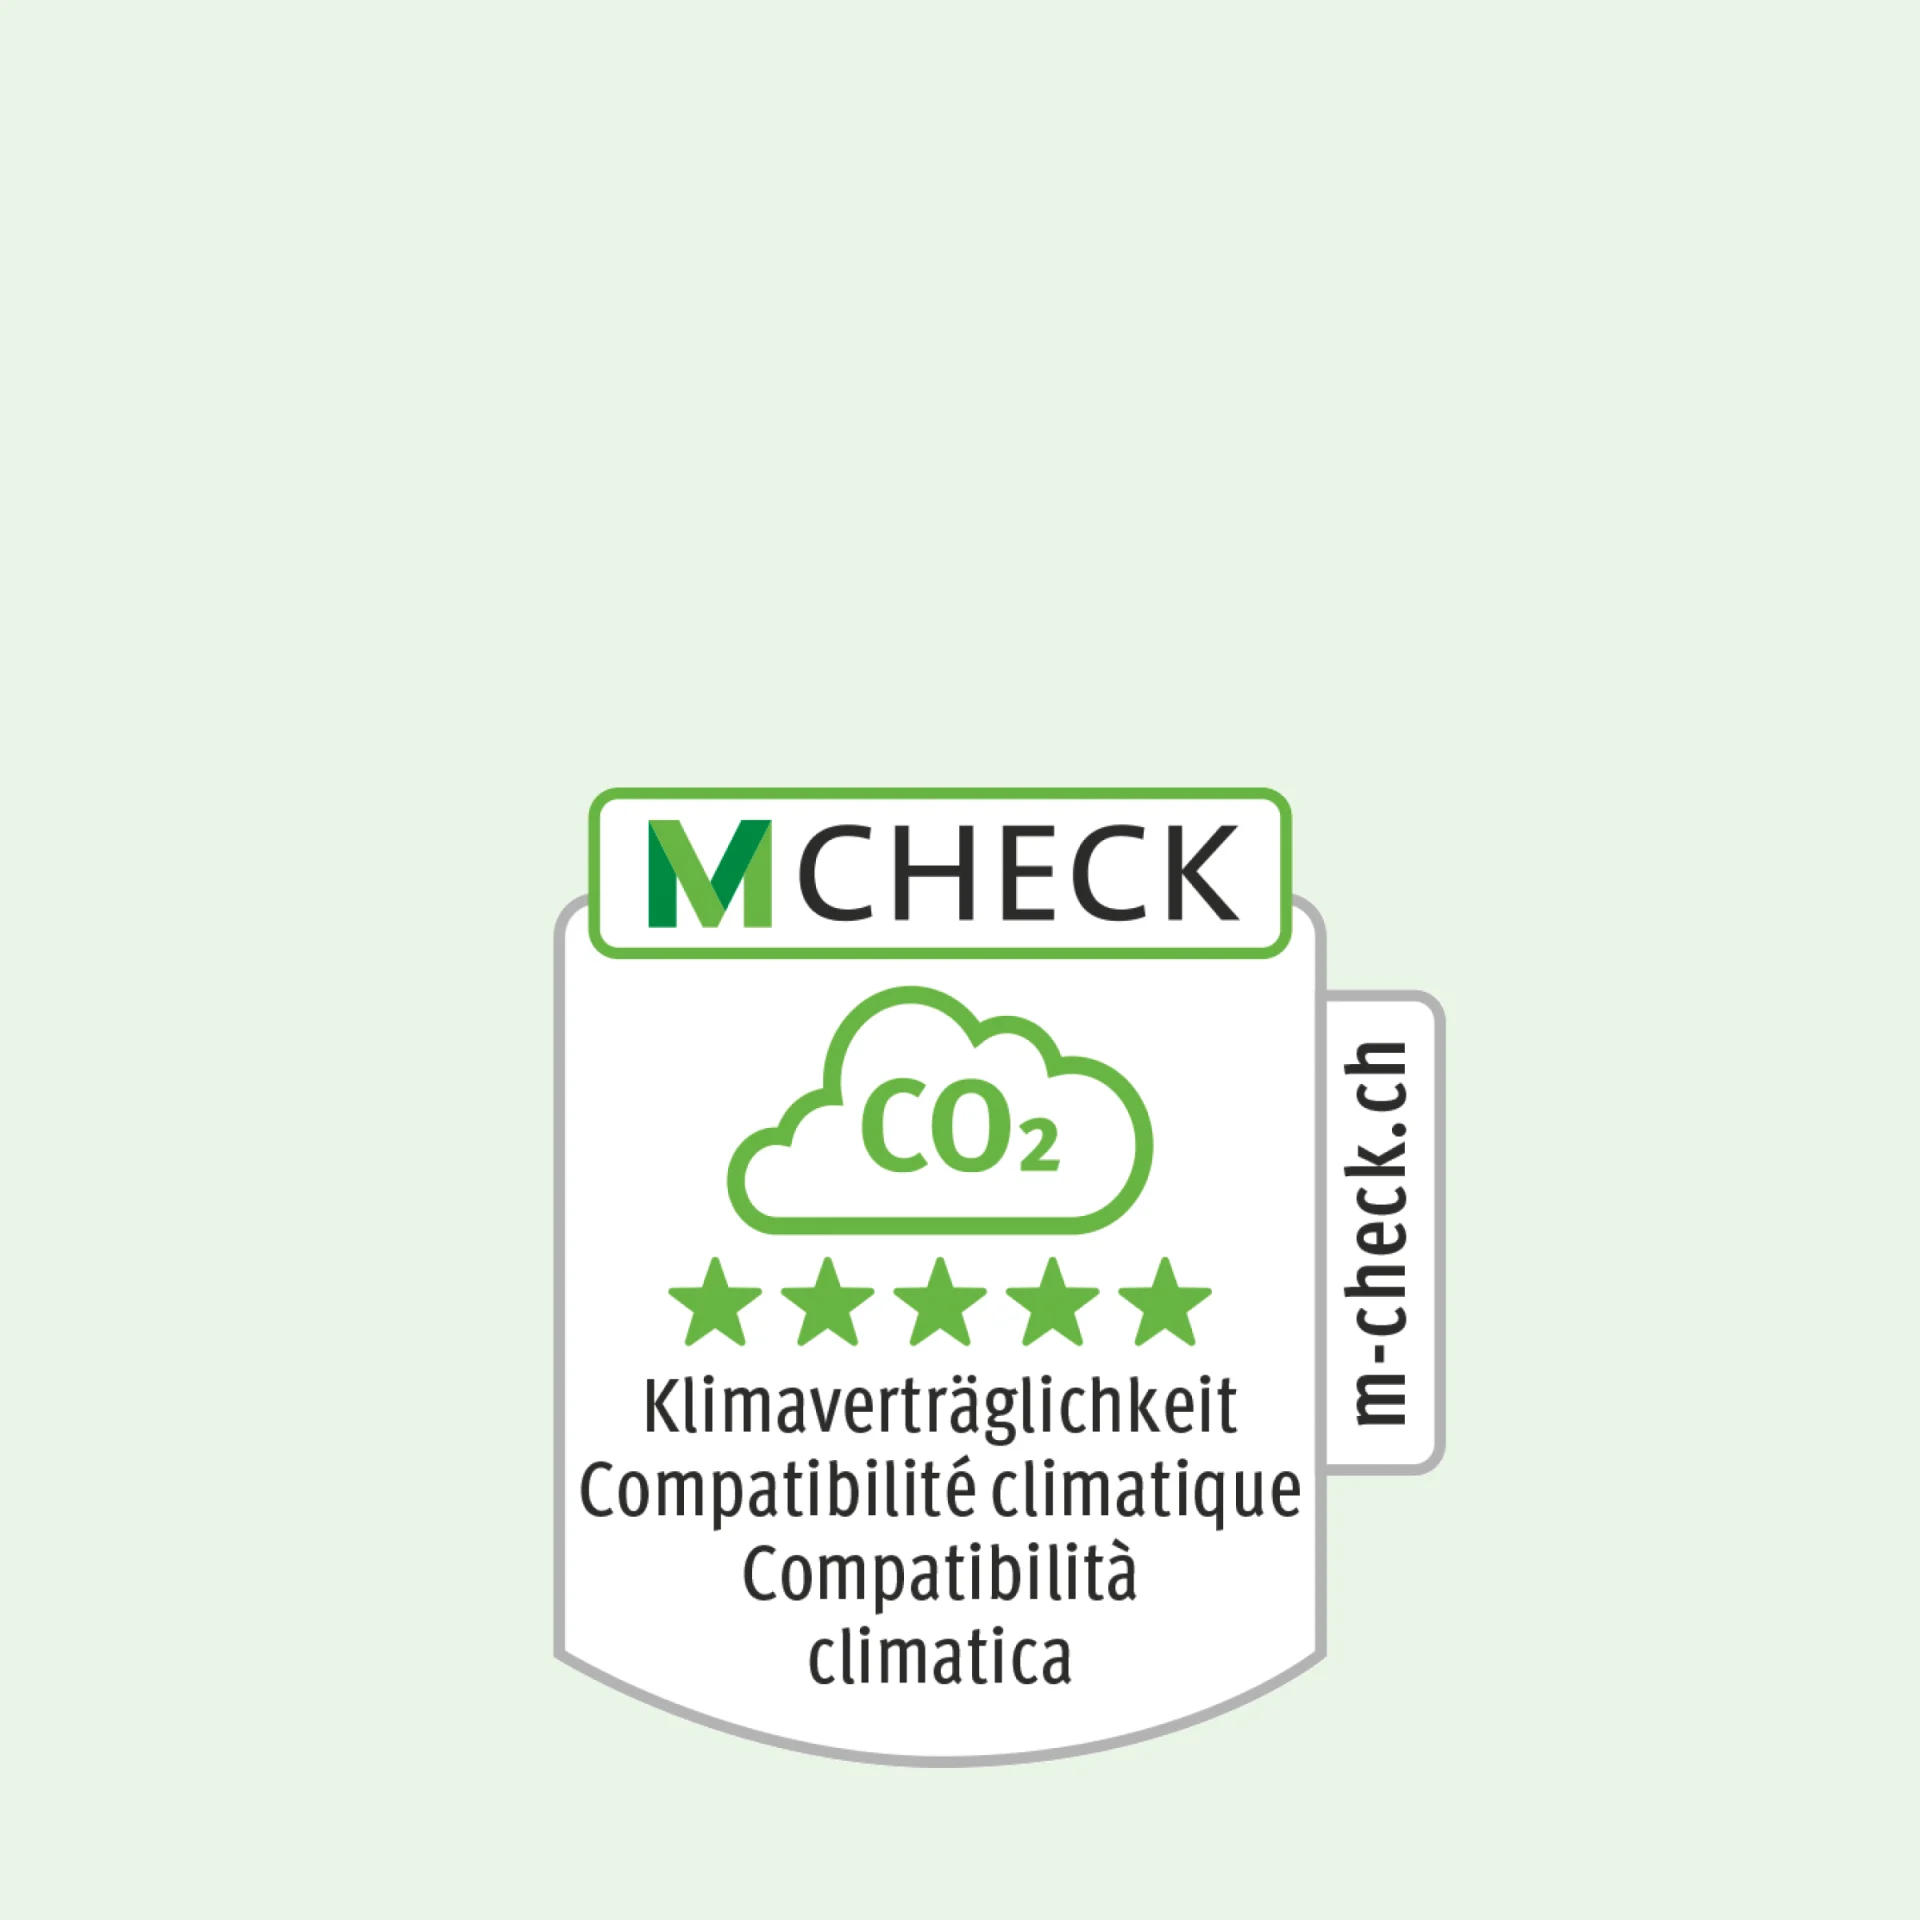 Icona M-Check con una nuvola di CO2, comprese le cinque stelle per la compatibilità climatica.